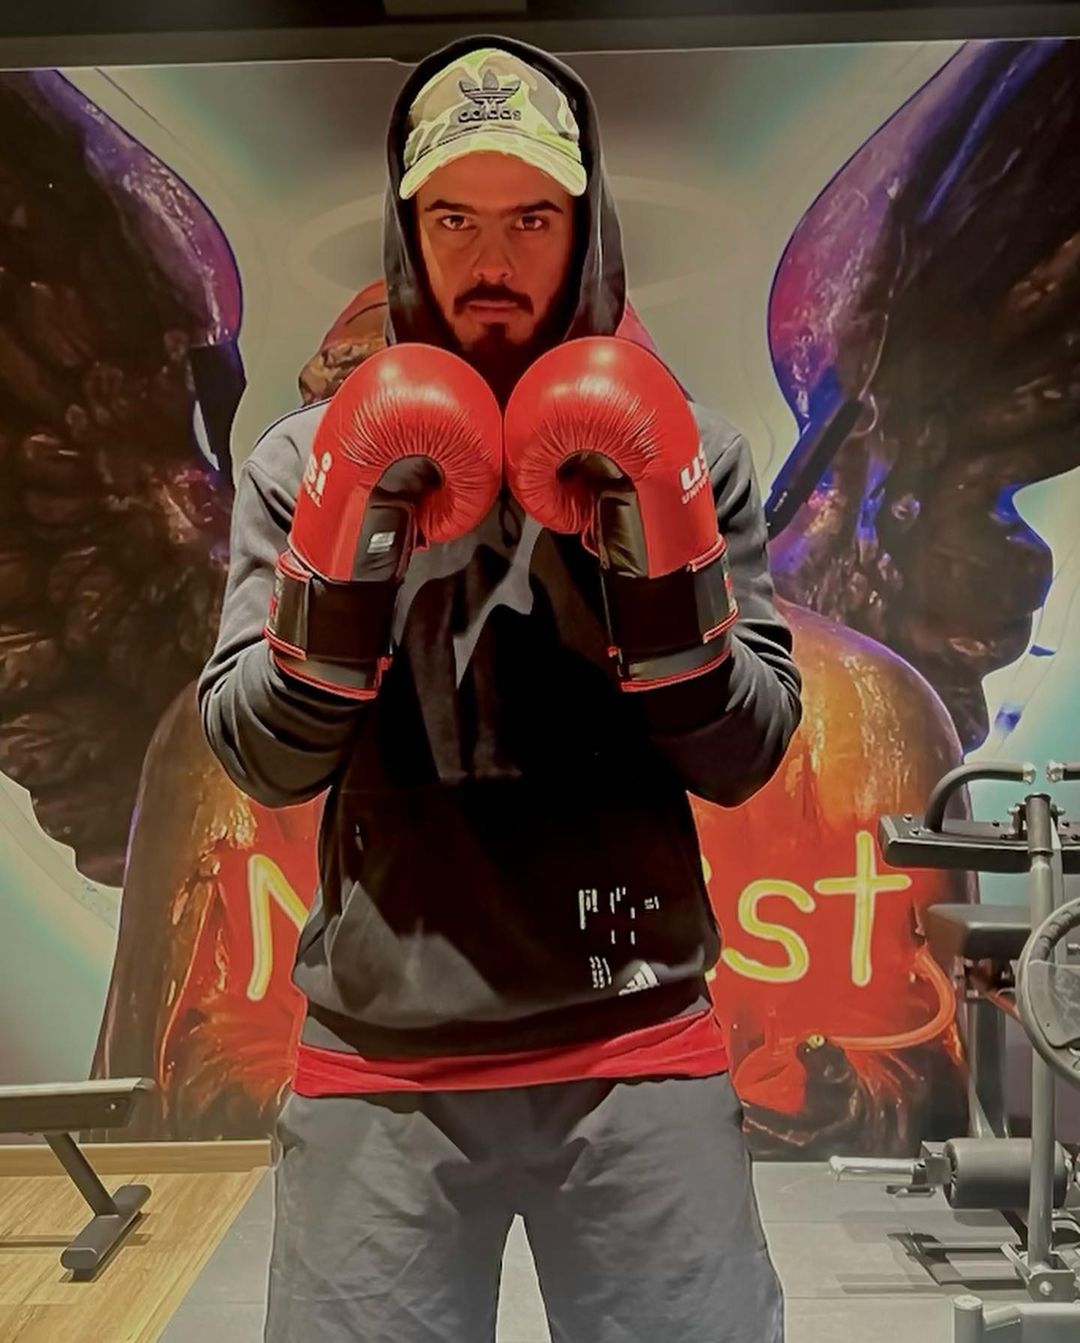 Nitish Rana in boxing attire. 